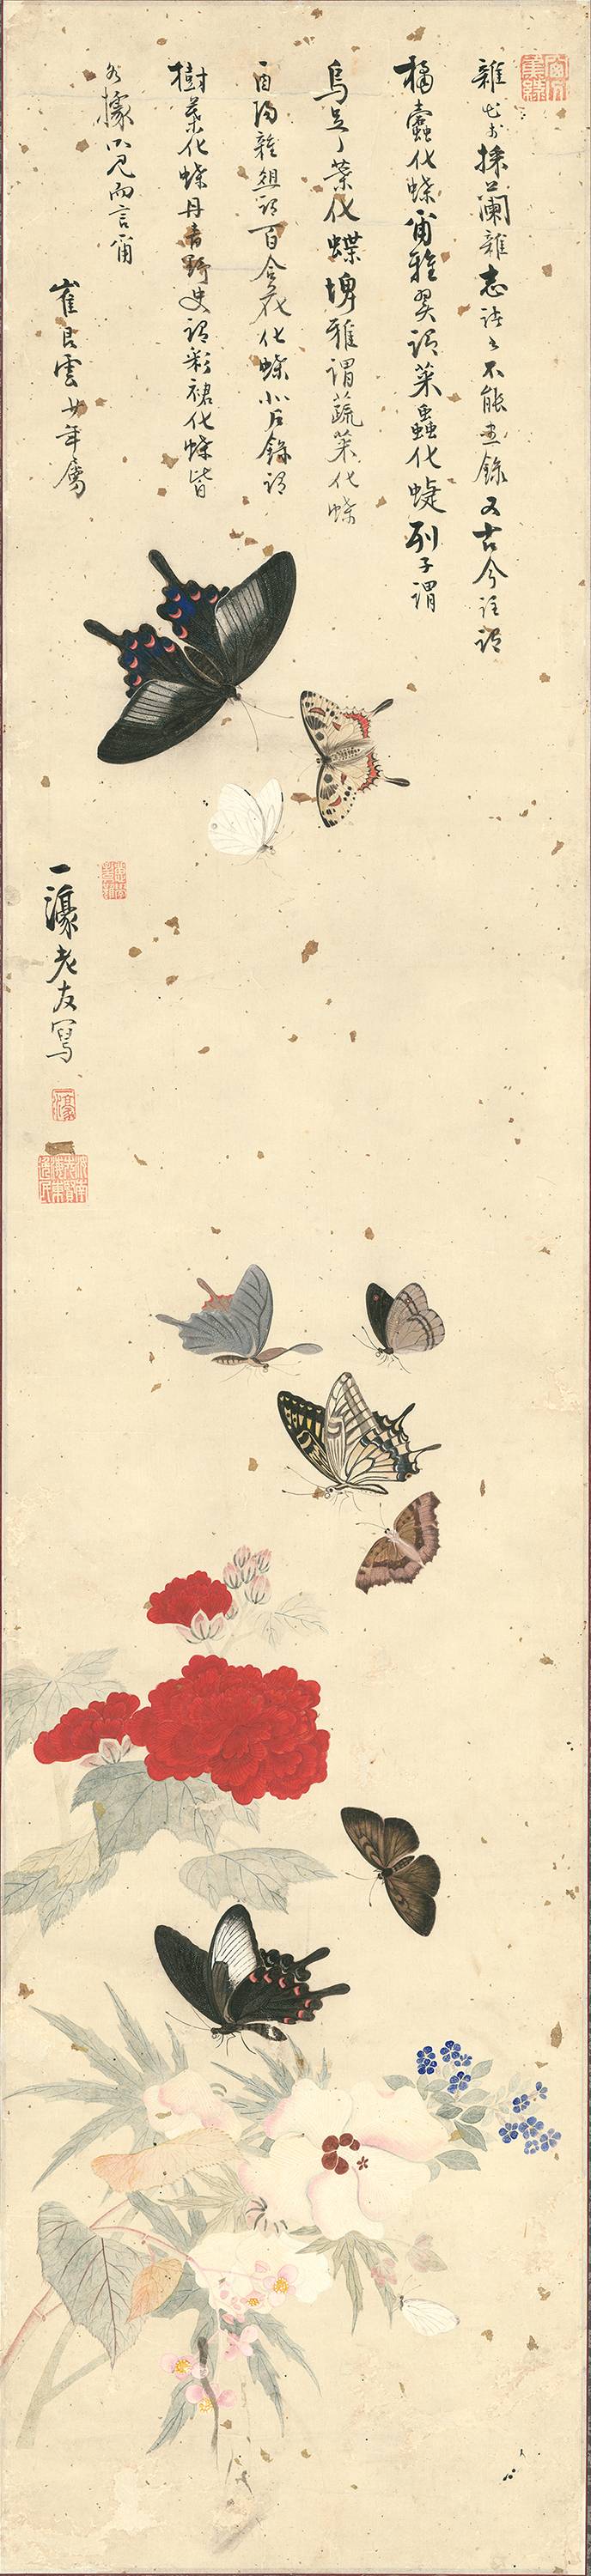 나비를 정말 잘 그렸던 조선시대의 나비 처돌이 화가 | 인스티즈